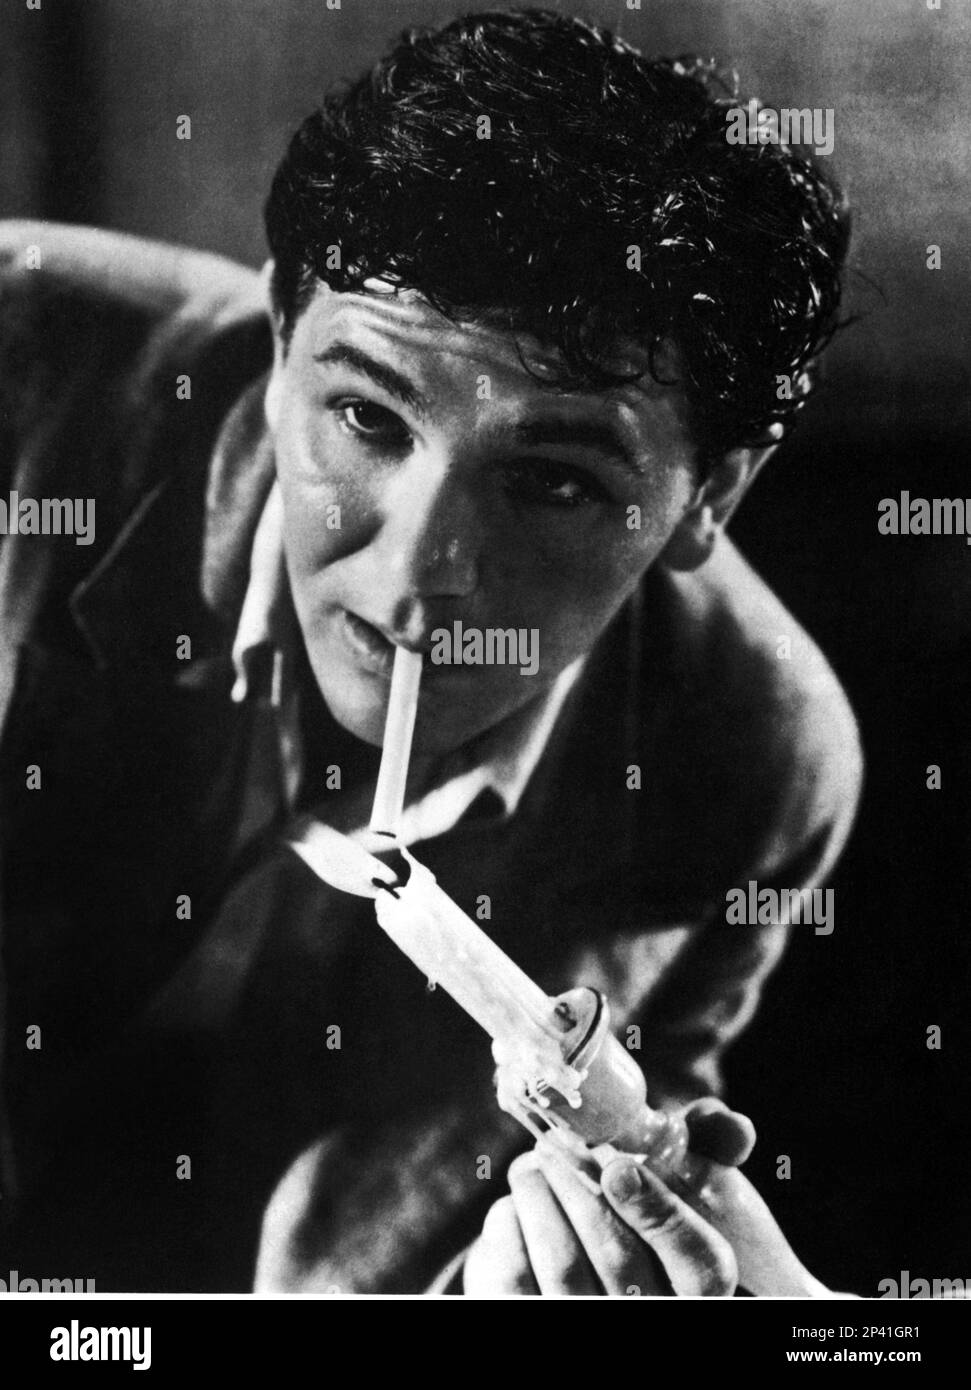 1949 c, USA : l'attore John GARFIELD ( 1913 - 1952 ) - CINEMA - attore cinematografico - ritratto - ritratto - celebrità personalità attori che fuma - fumatore - sigaretta - sigaretta - personalità personaggi celebrità attori attori fumatore - fumo - fumo - candela - ribelle - ribelle - Archivio GBB Foto Stock